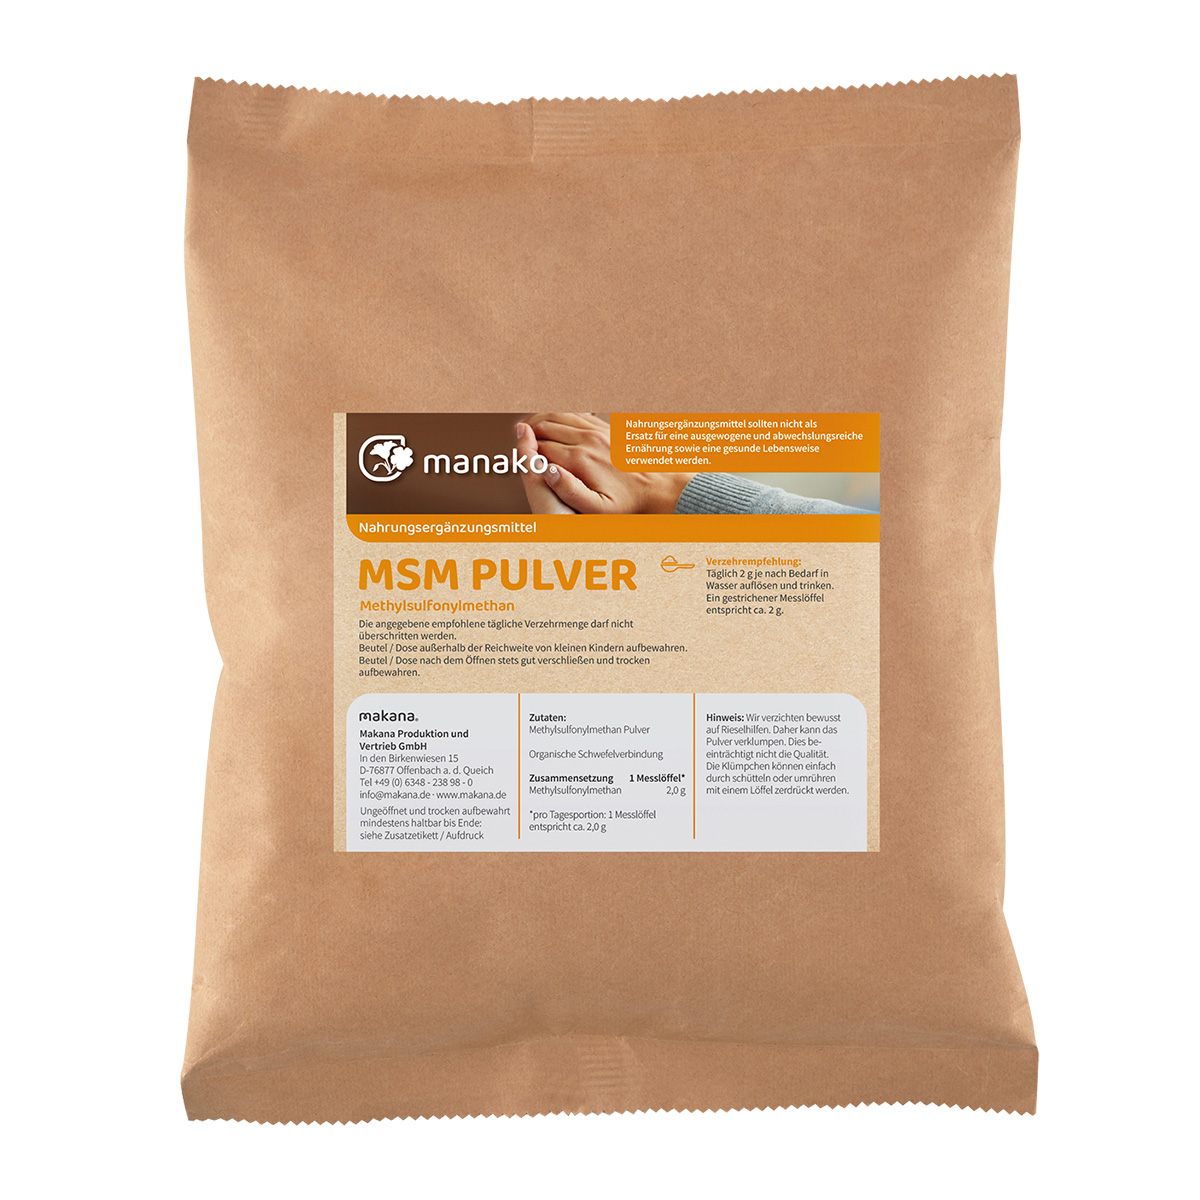 manako MSM (Methylsulfonylmethan) kristallines Pulver, 99,9% rein, 1 kg Beutel